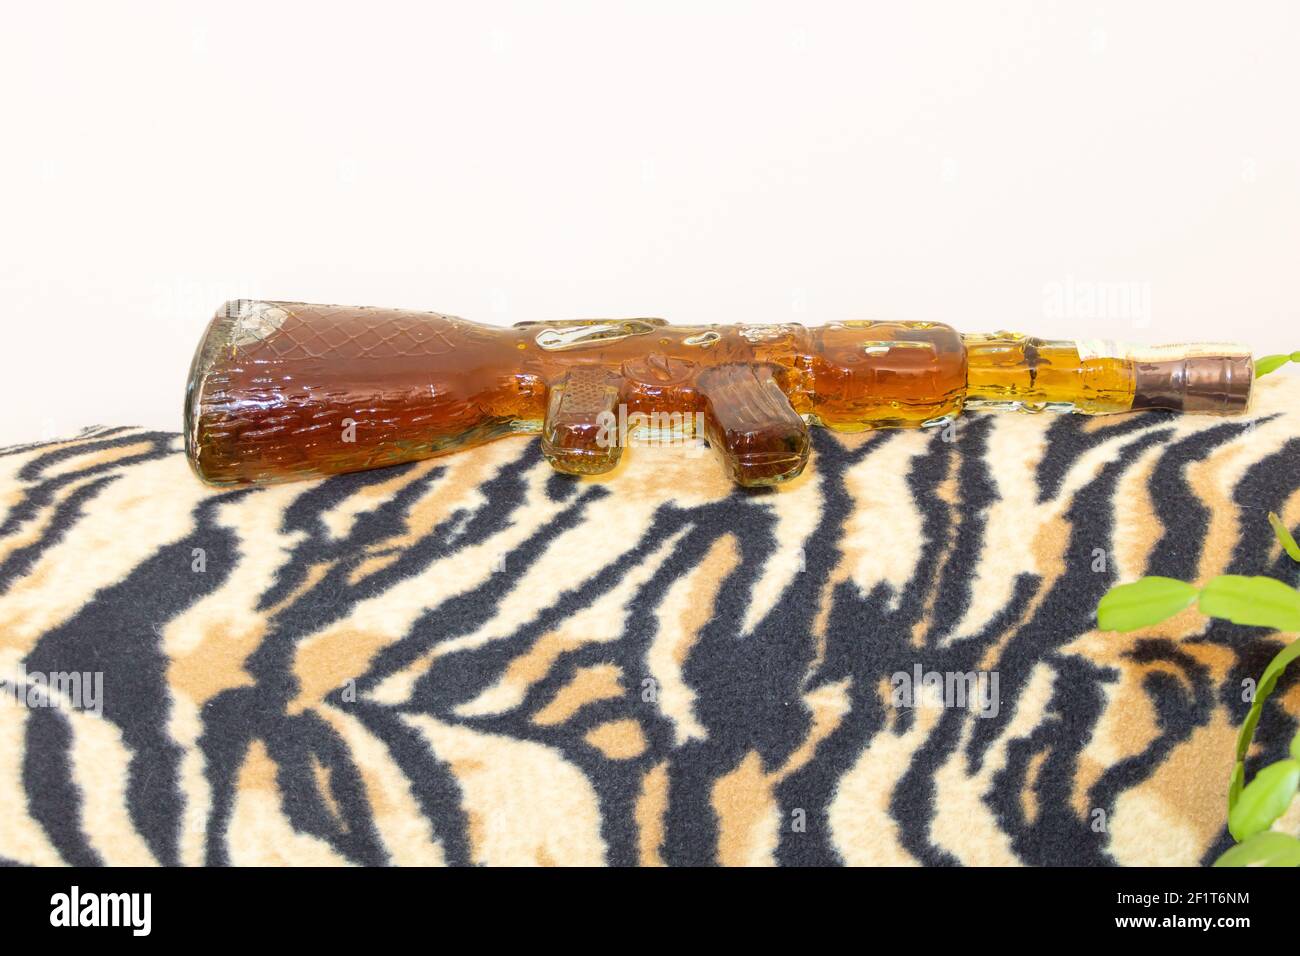 Eine Flasche Alkohol in Form einer AK-47 Waffe Stockfotografie - Alamy